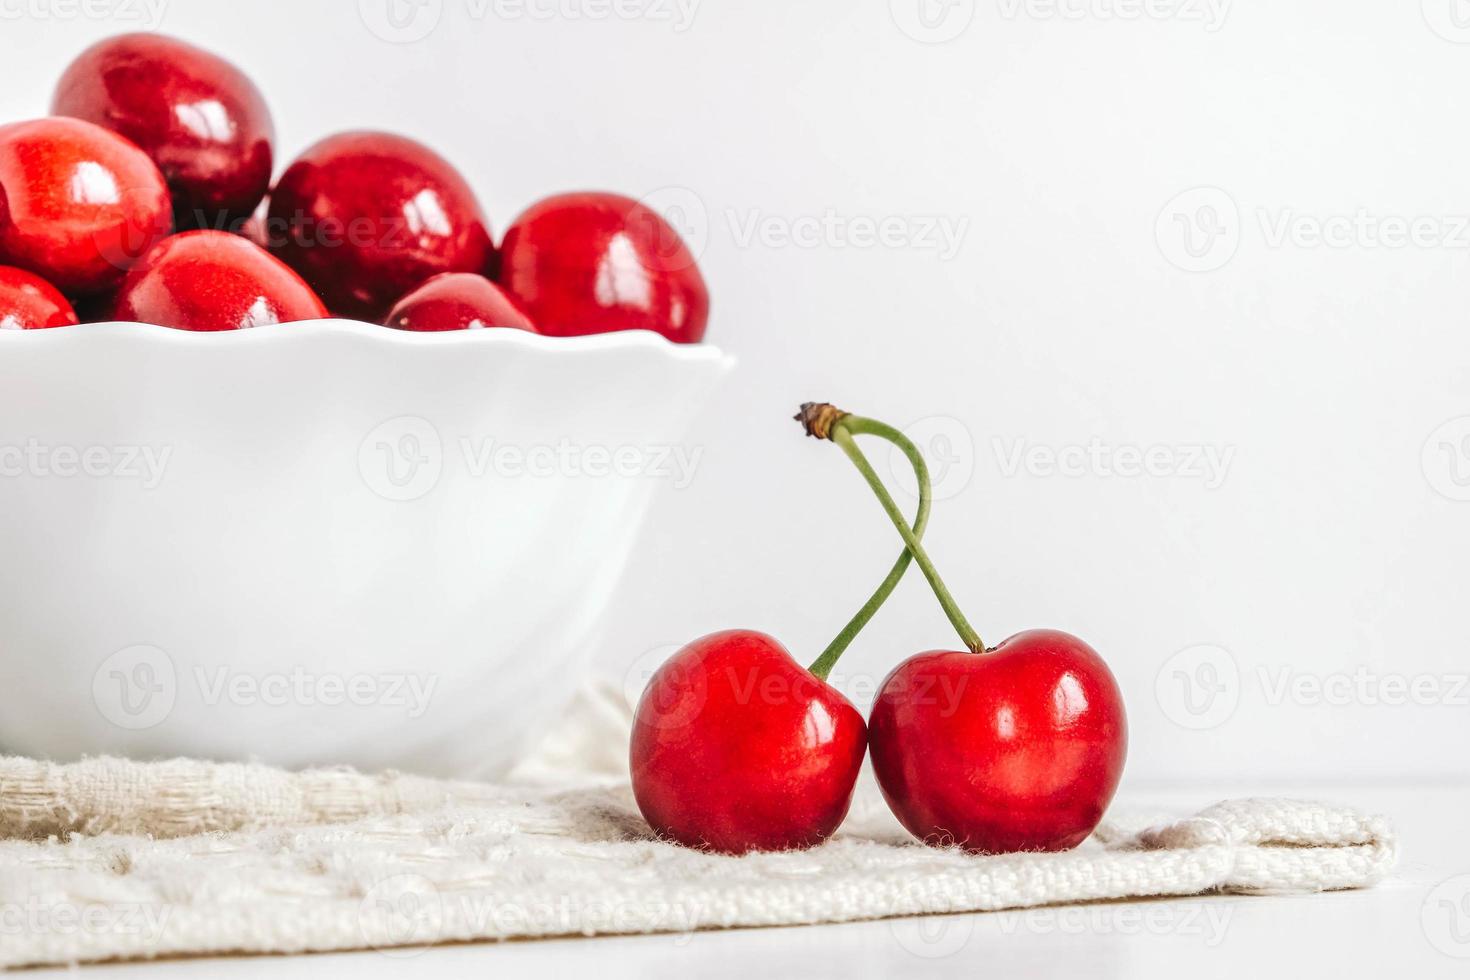 cerises rouges juteuses fraîches dans une assiette blanche sur le fond en bois blanc. copie, espace vide pour le texte photo